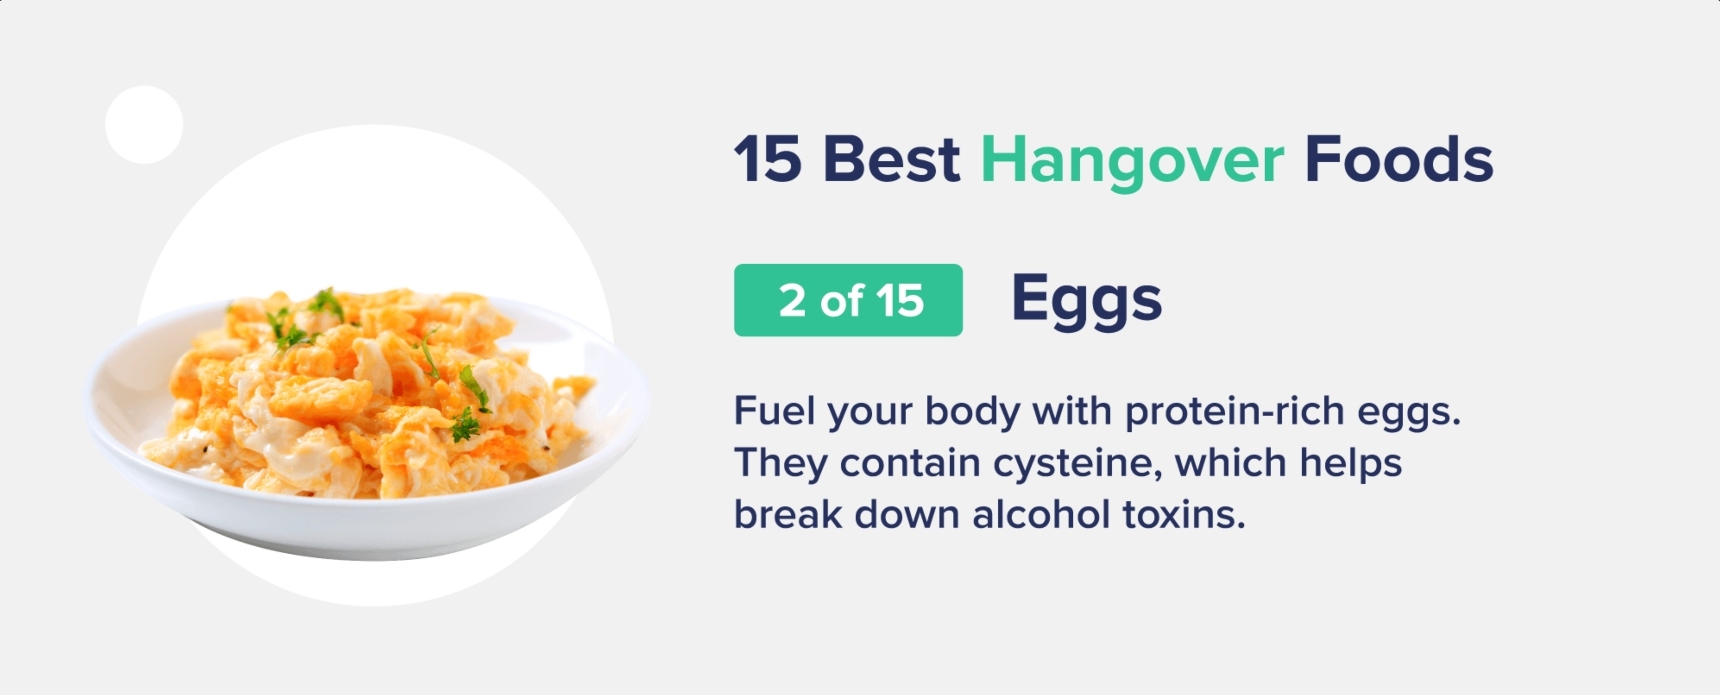 eggs best hangover foods